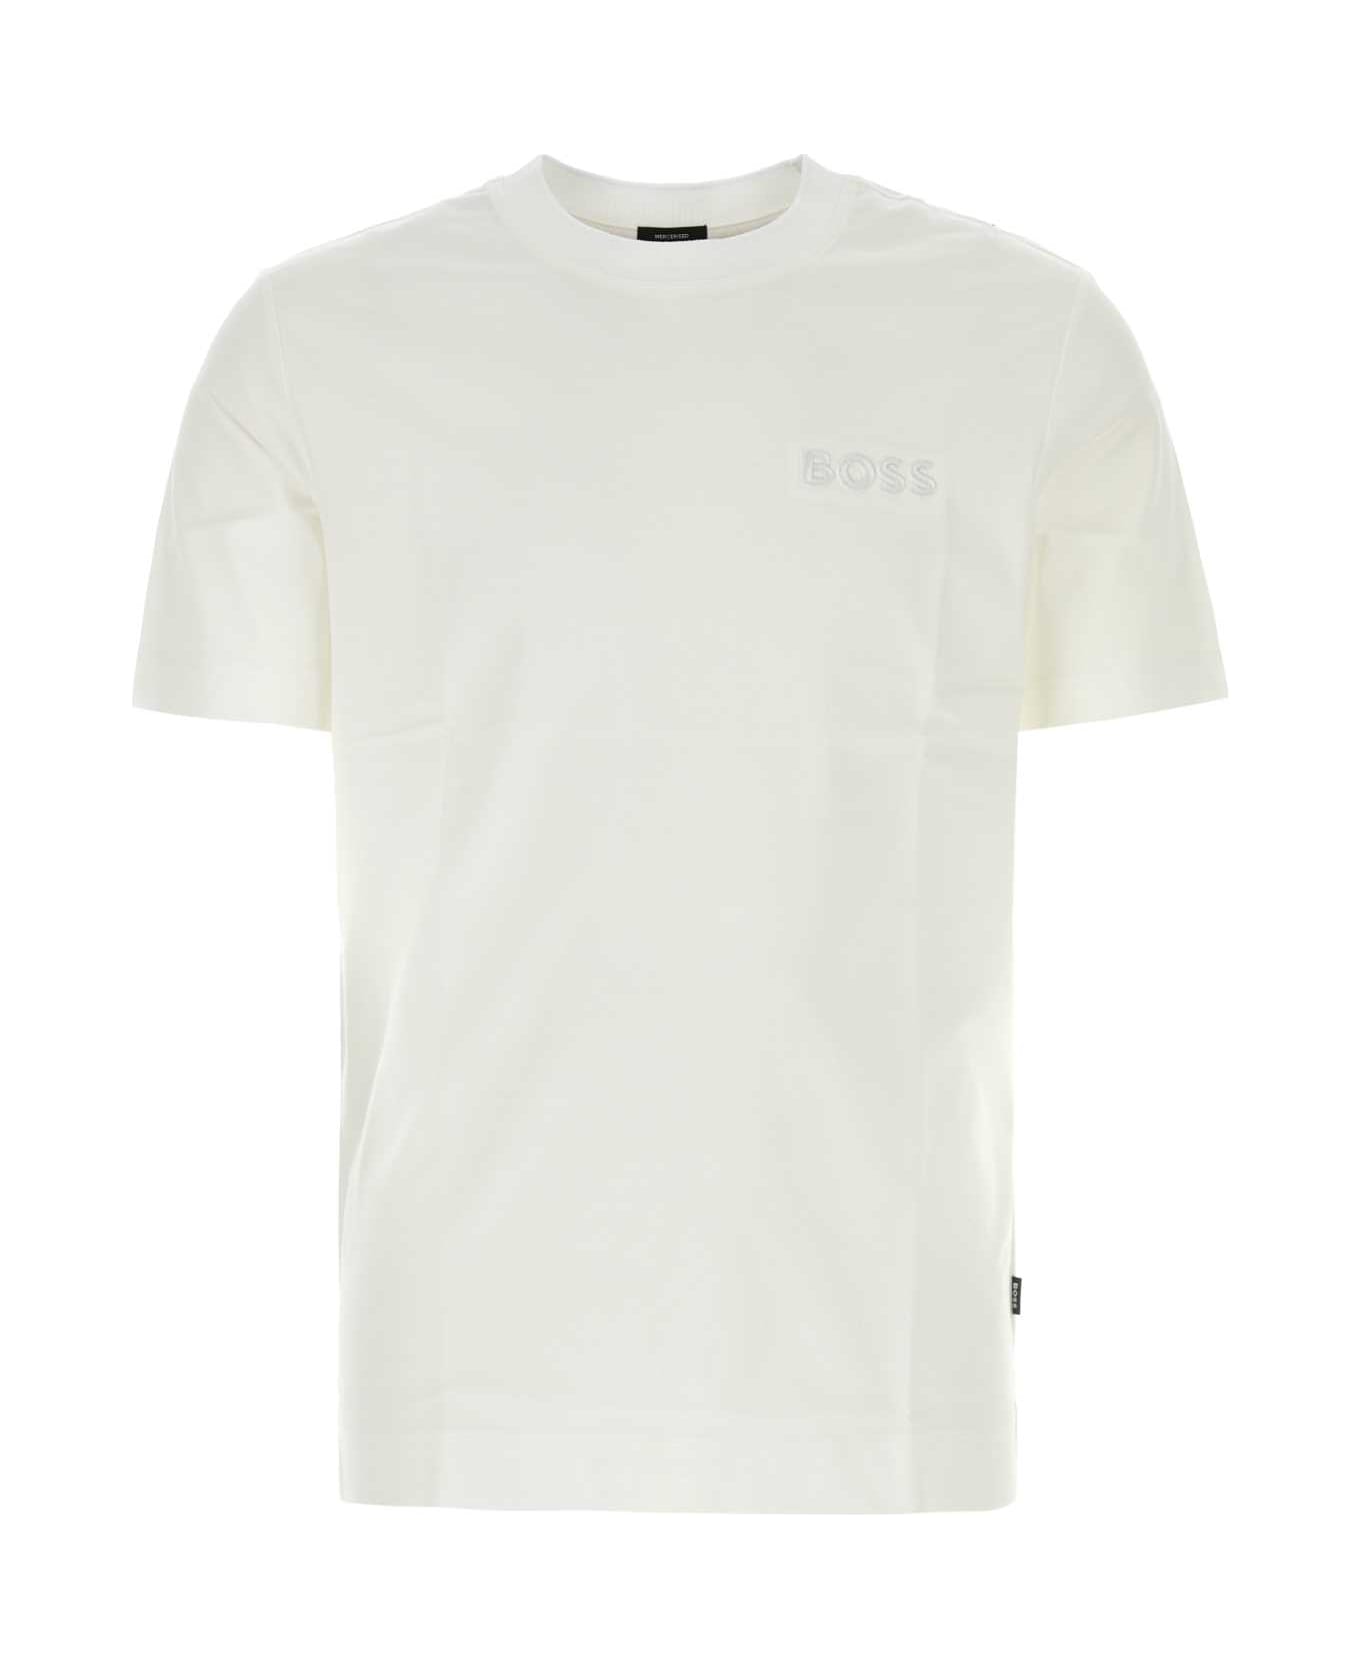 Hugo Boss White Cotton T-shirt - White